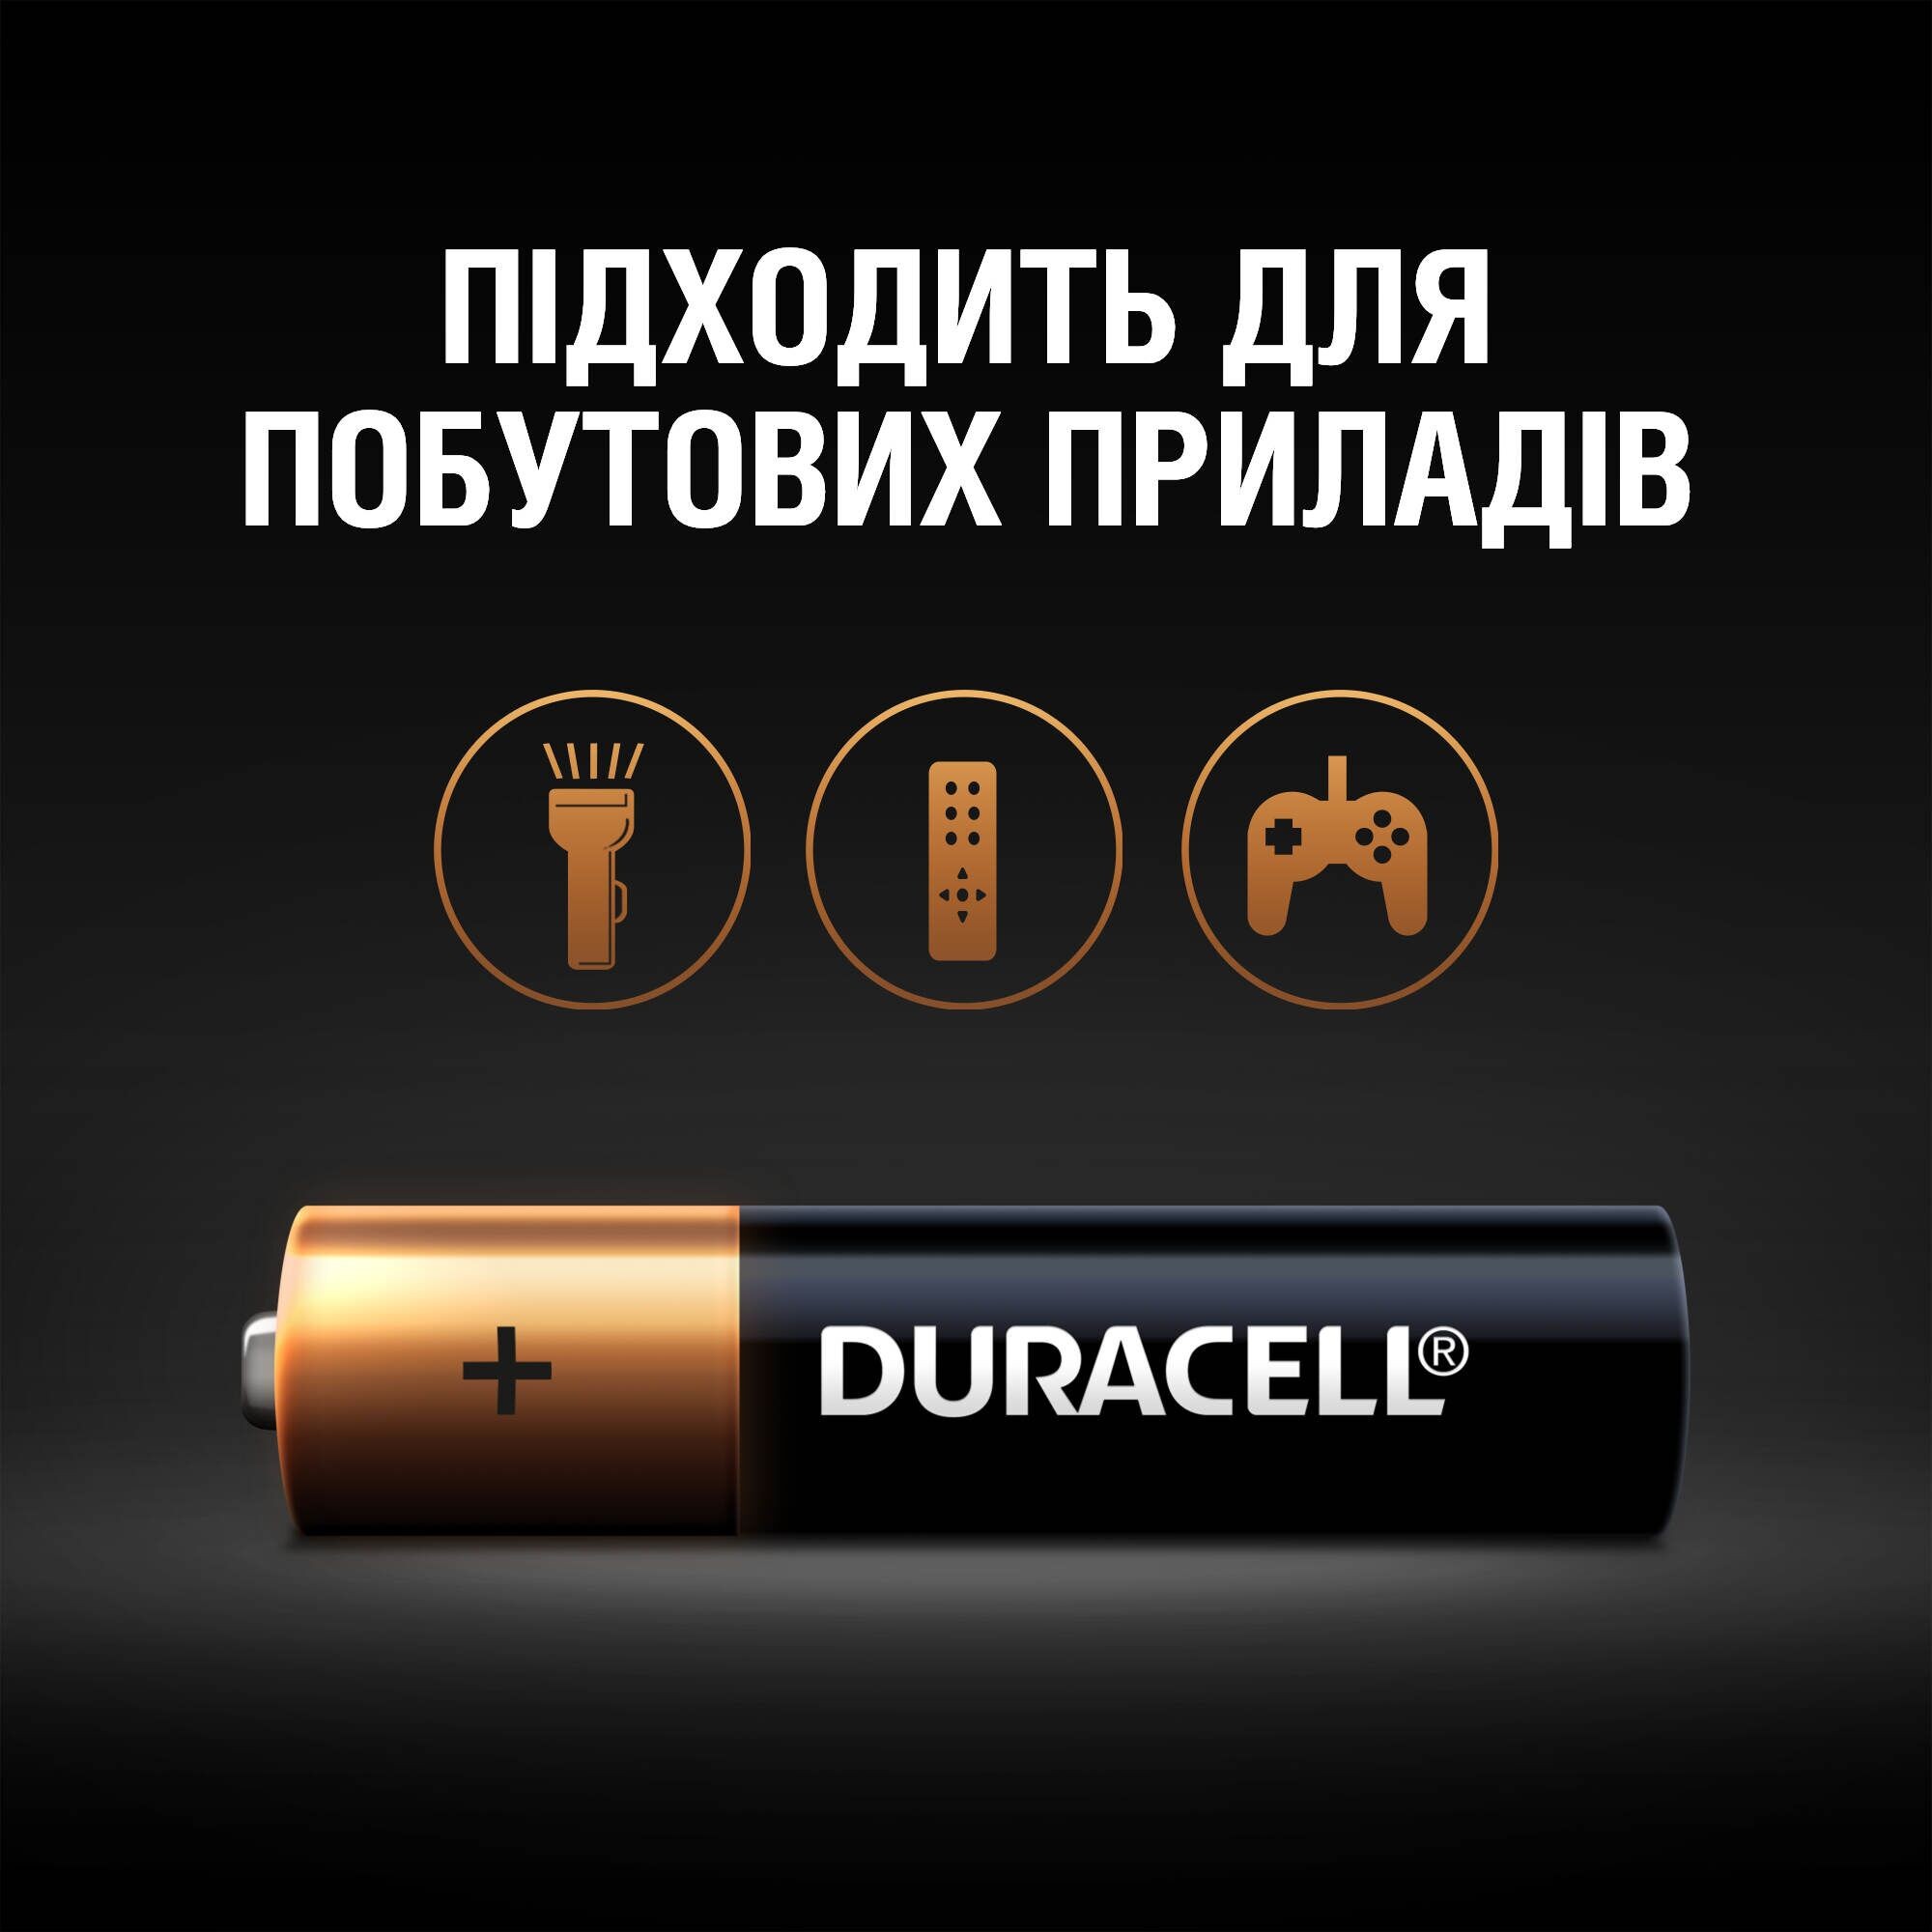 Батарейка Duracell LR03 MN2400 (4шт.) отзывы - изображения 5